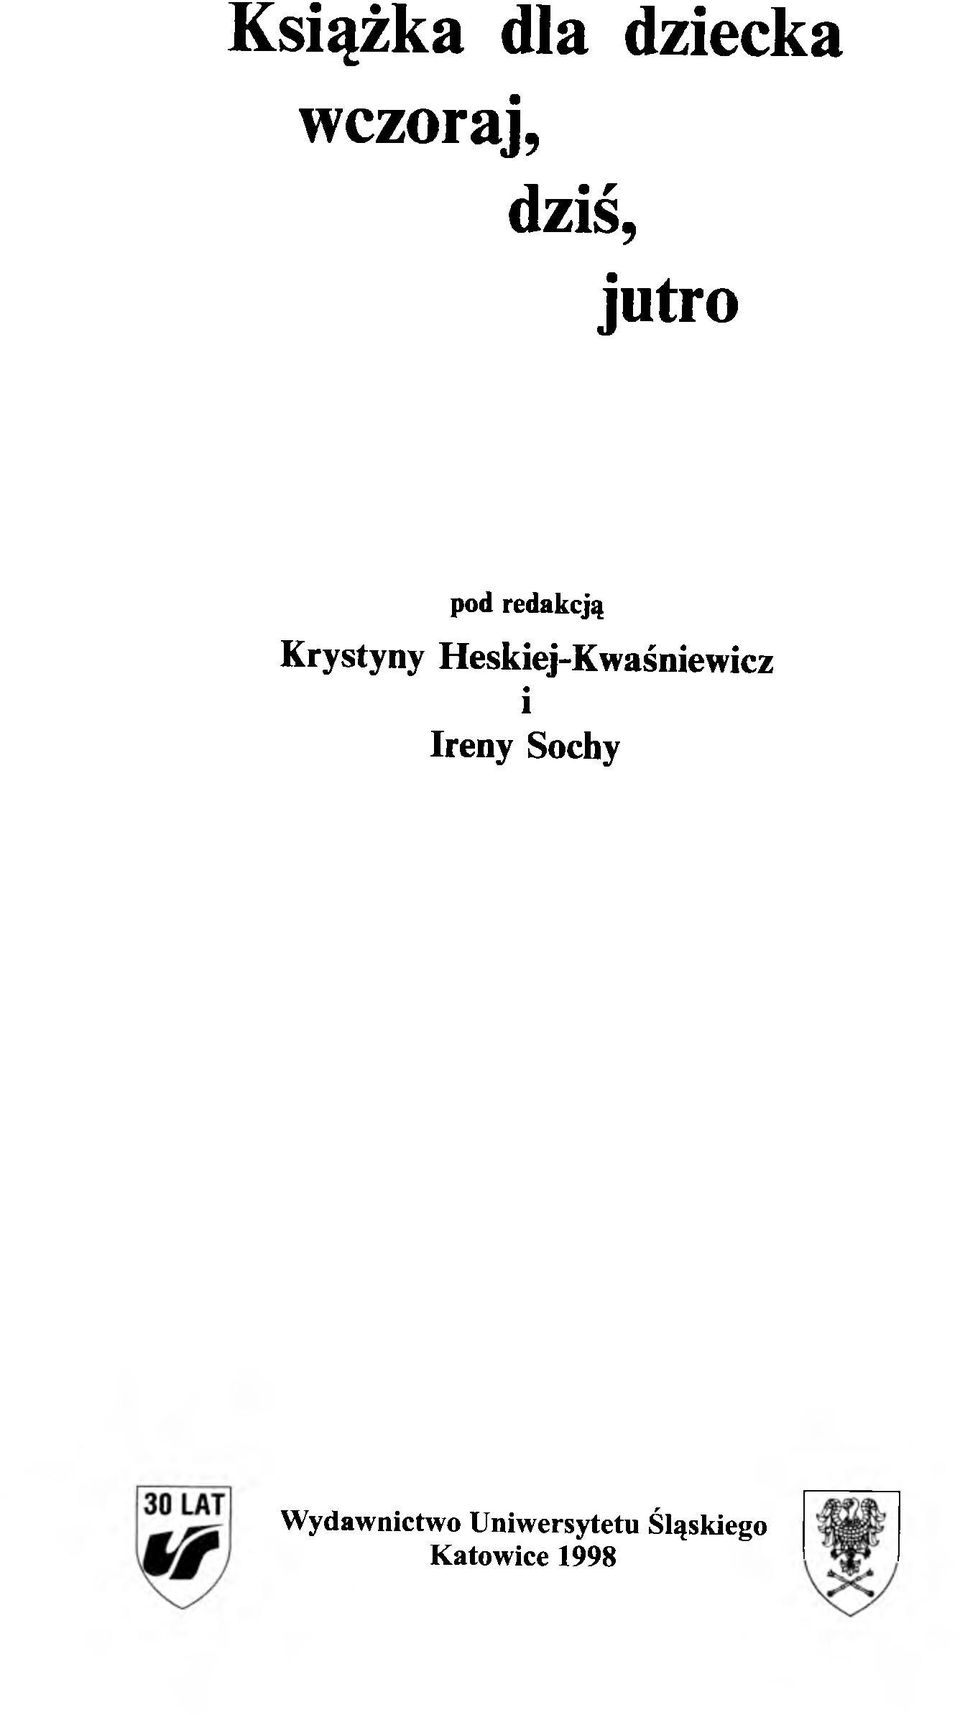 Heskiej-Kwaśniewicz i Ireny Sochy